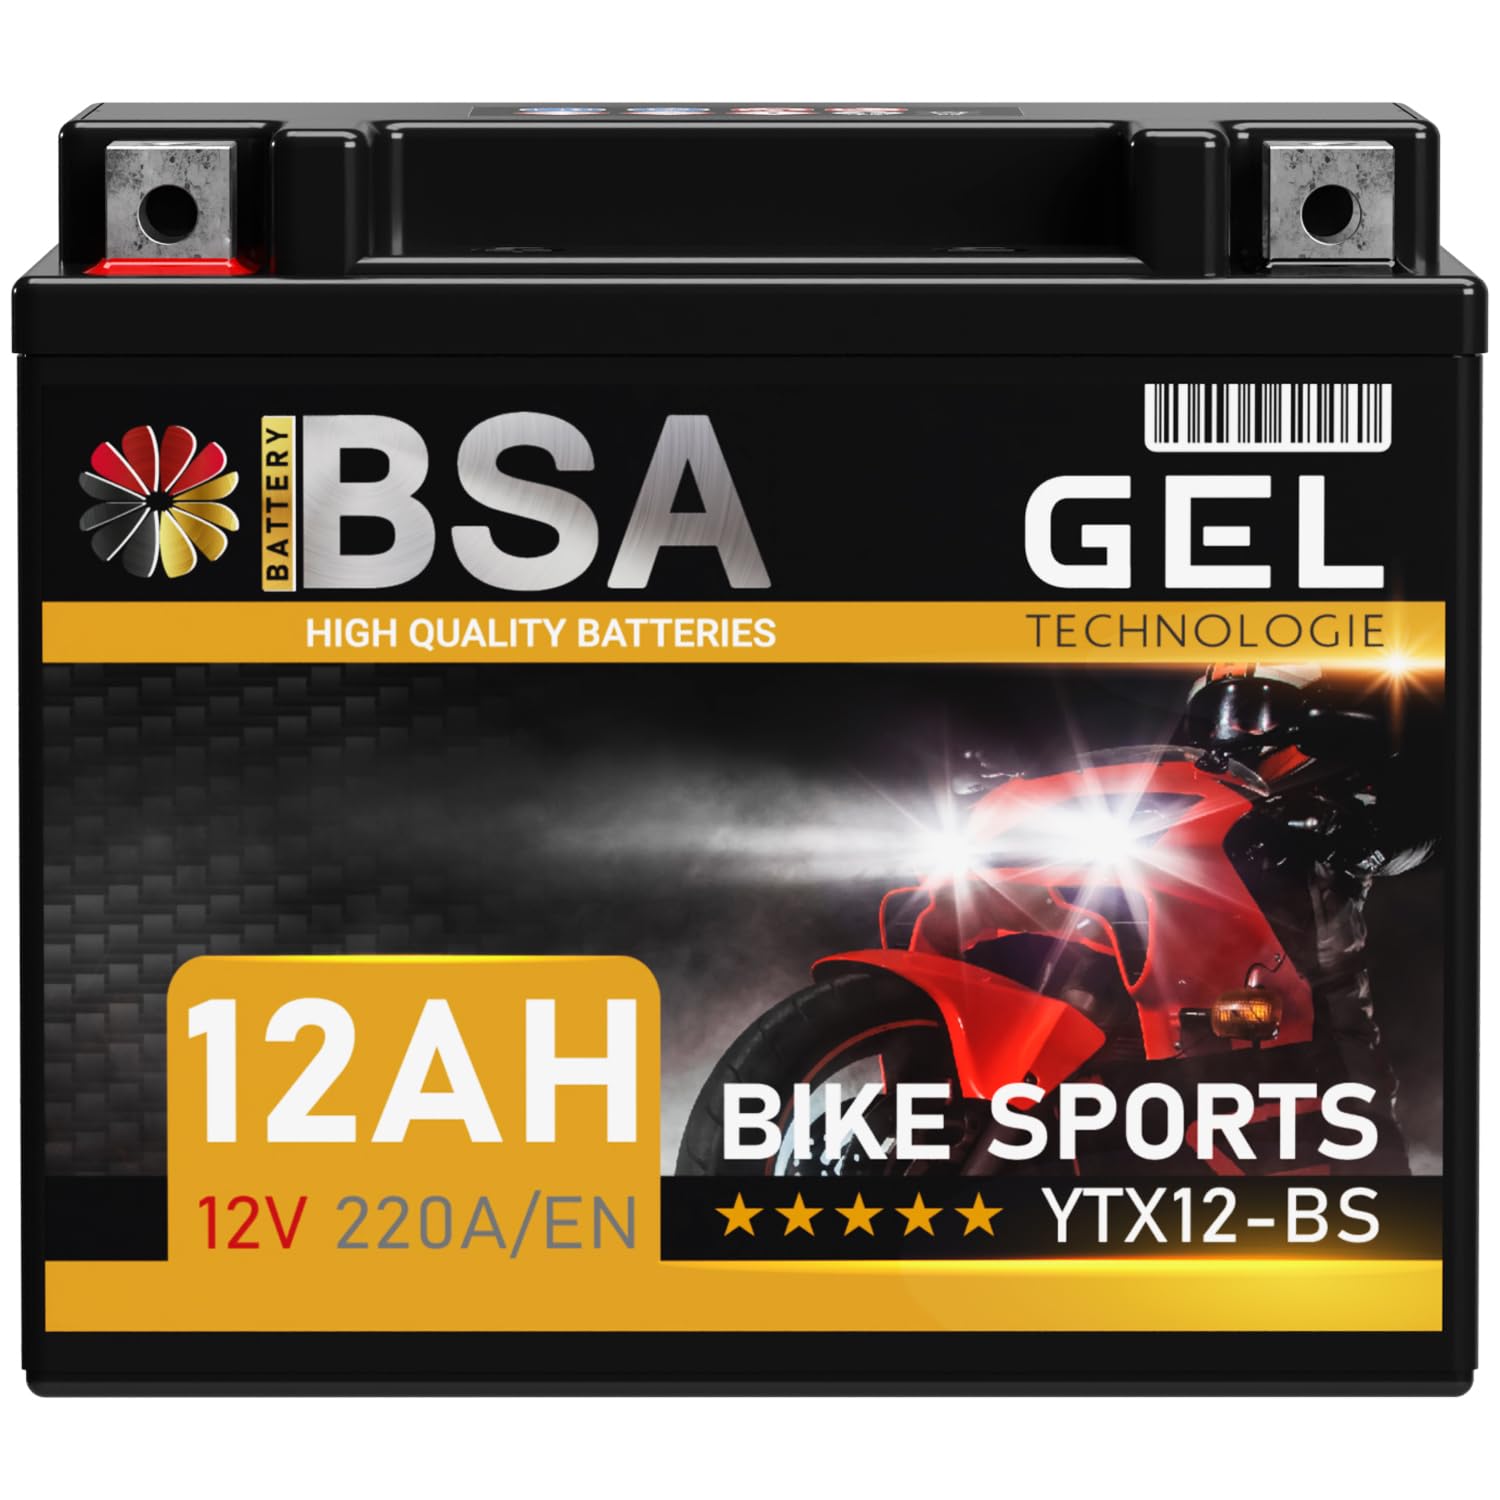 BSA YTX12-BS GEL Roller Batterie 12V 12Ah 220A/EN Motorradbatterie doppelte Lebensdauer entspricht CTX12-BS 51012 GTX12-BS Quad vorgeladen auslaufsicher wartungsfrei von BSA BATTERY HIGH QUALITY BATTERIES